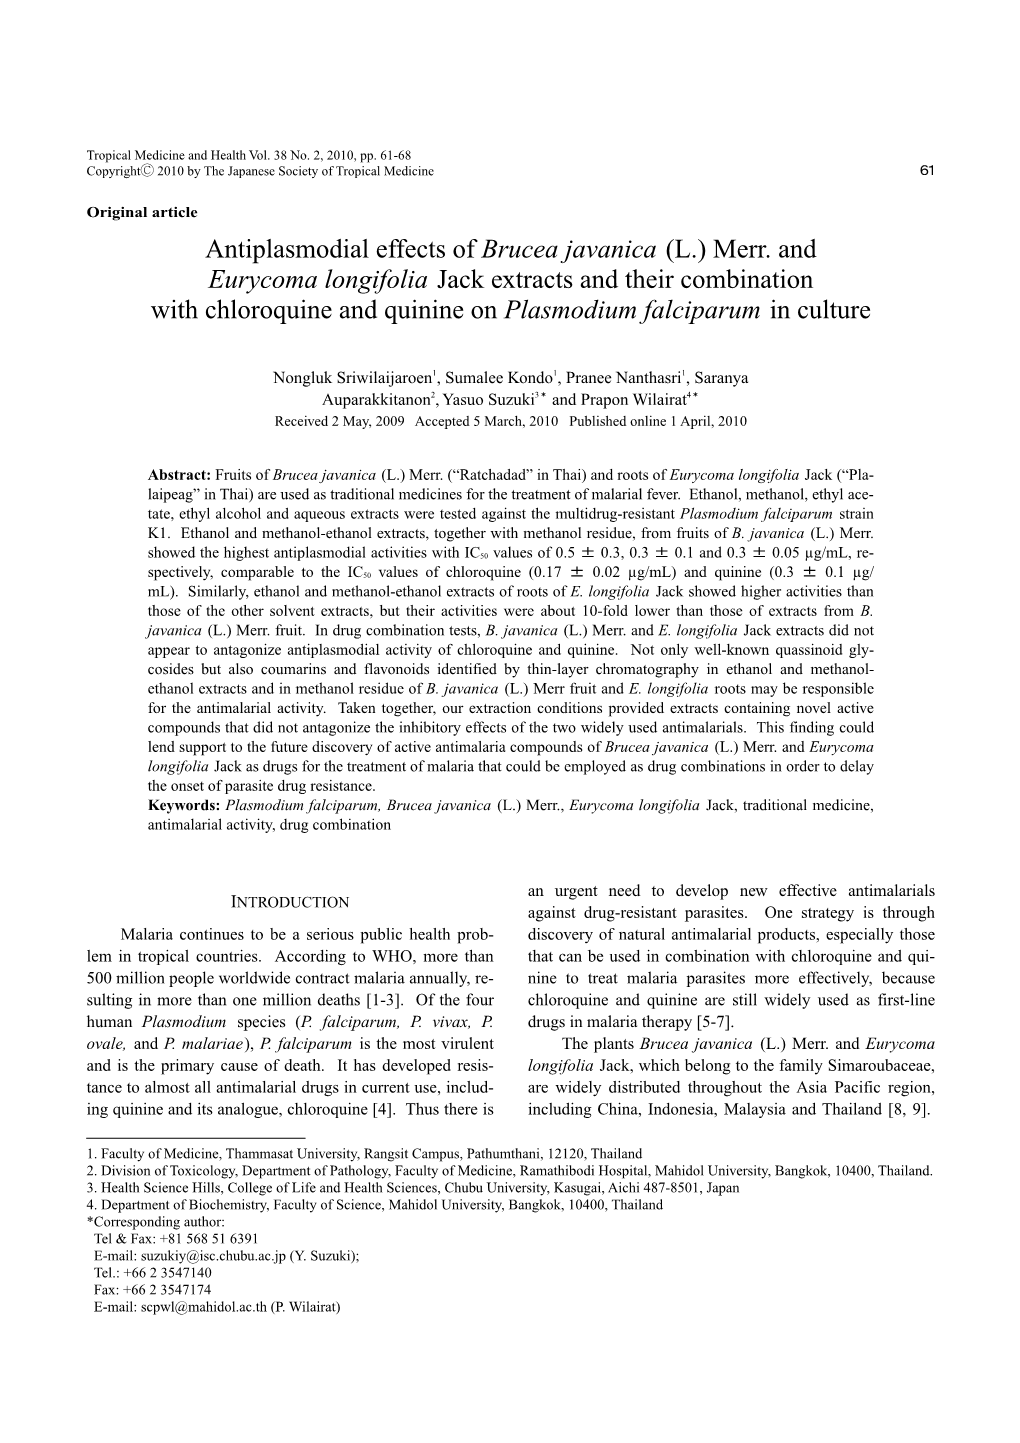 Antiplasmodial Effects of Brucea Javanica (L.) Merr